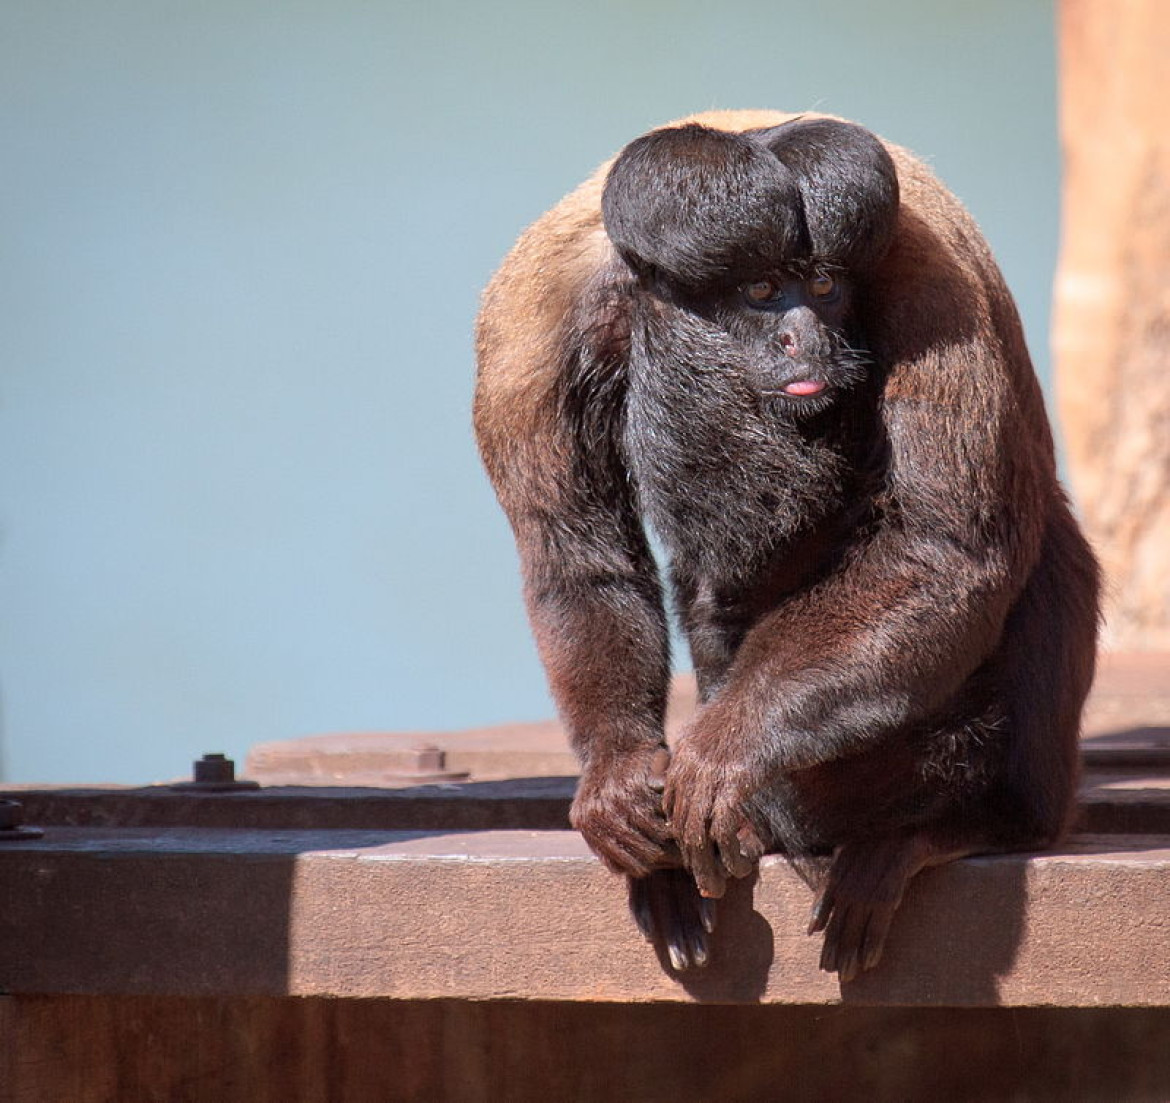 Mono saki barbudo del amazonas, en peligro de extinción. Foto Twitter @PalinaL_.